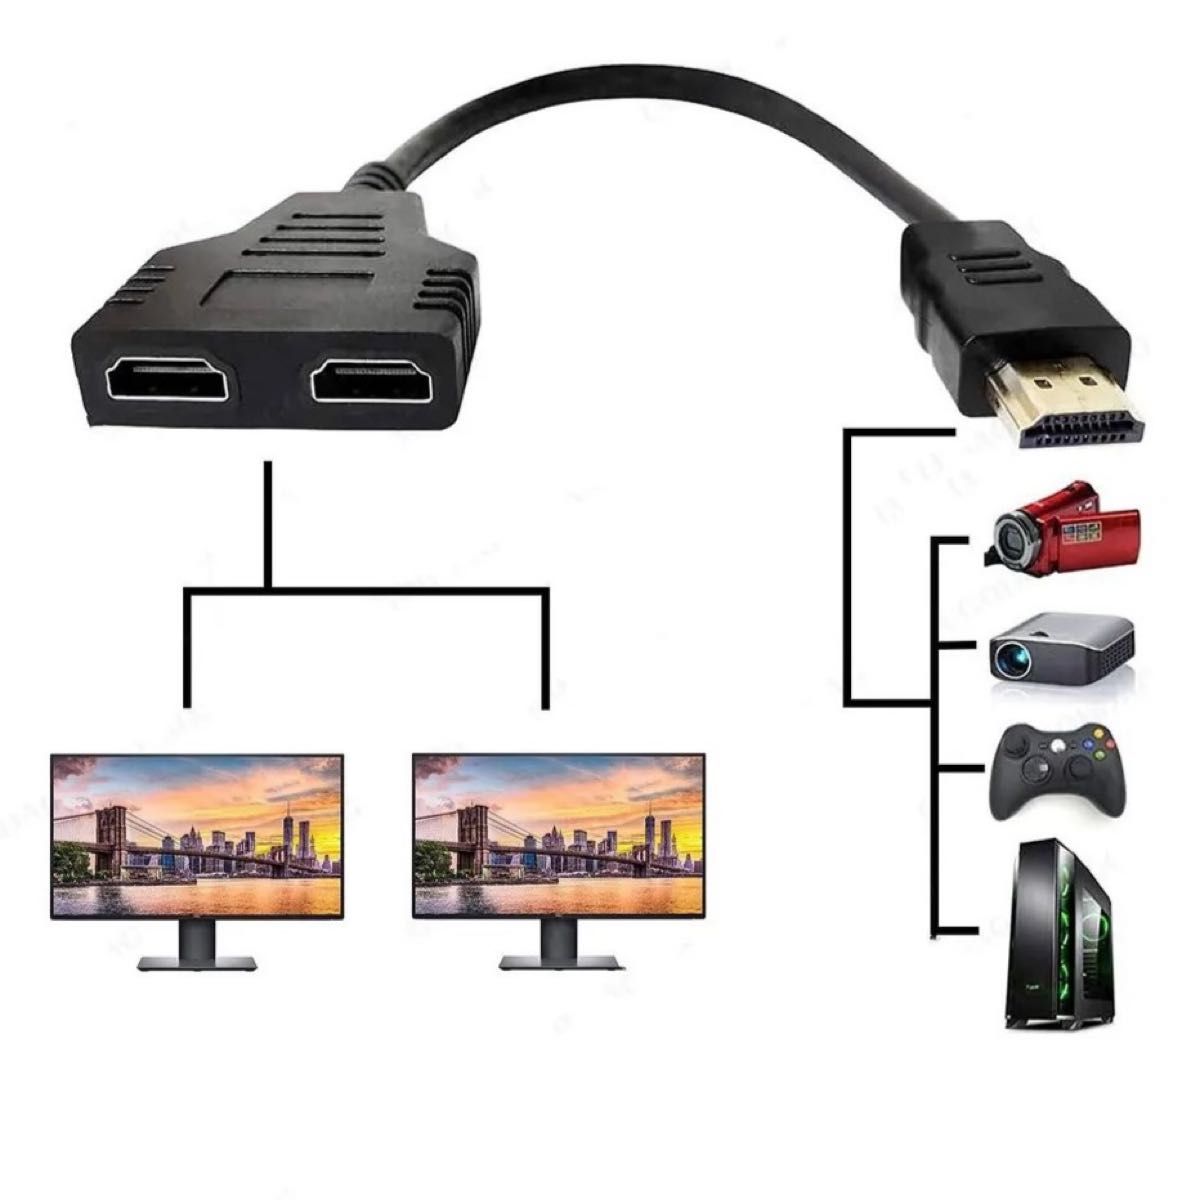 HDMI分配器 HDMIスプリッター 1入力 2出力 4K 3D フルHD 1080P 2台のディスプレイに同時出力可能 b